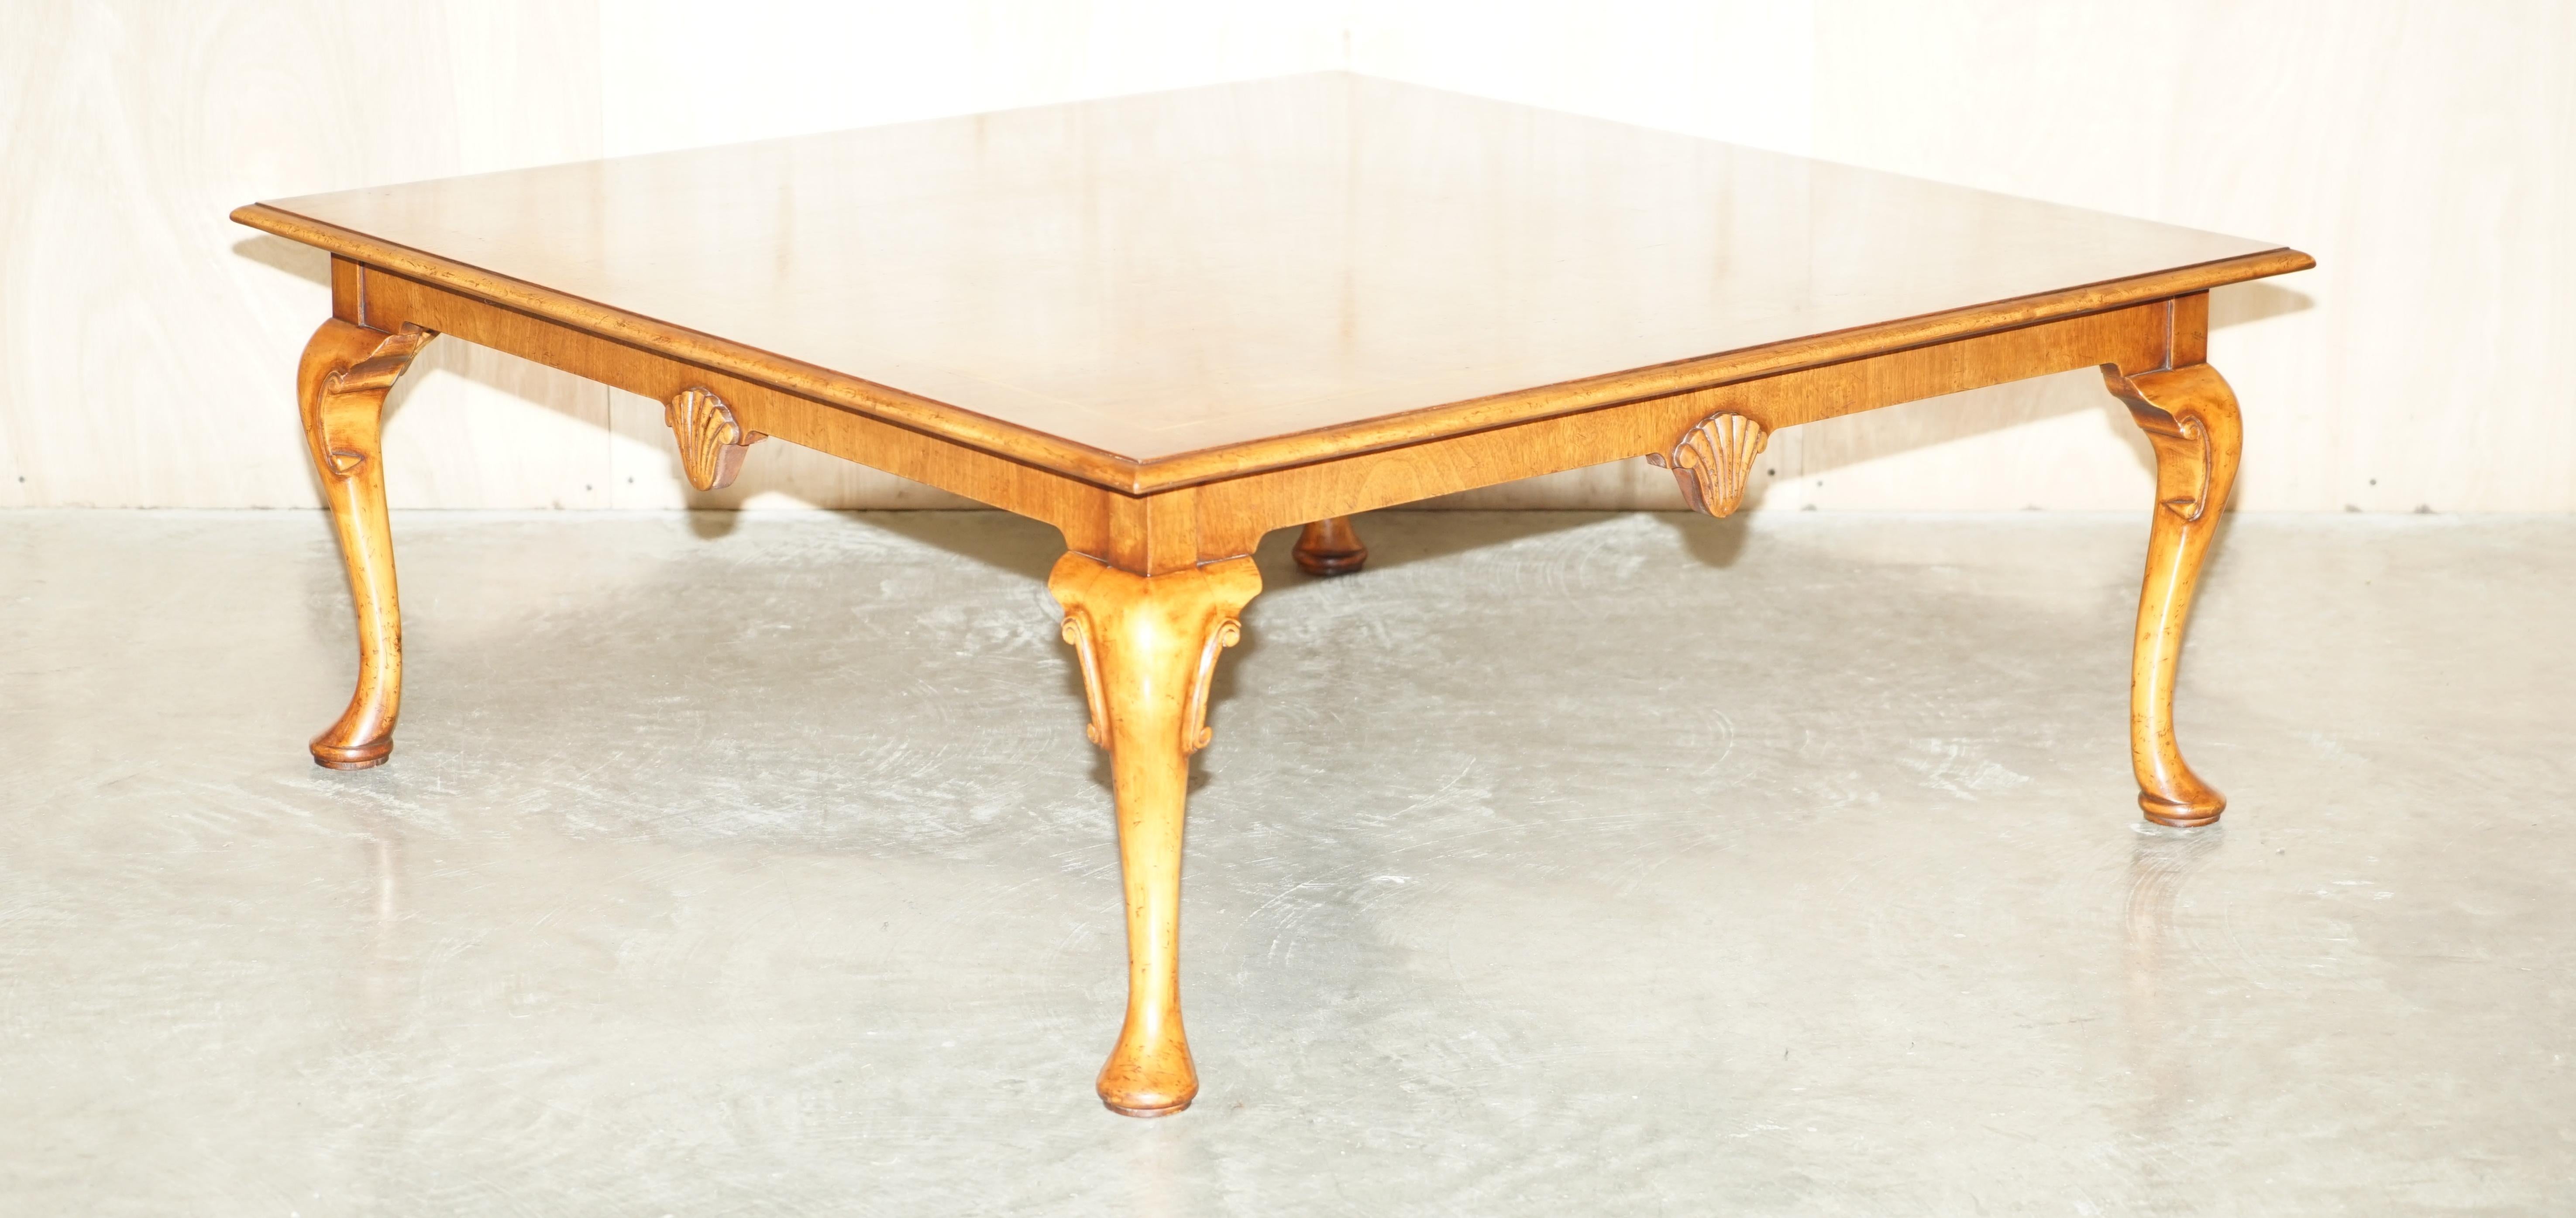 Royal House Antiques

Royal House Antiques a le plaisir de proposer à la vente cette superbe table basse vintage en ronce de noyer de style Thomas Chippendale avec des pieds élégants en cabriolet.

Veuillez noter que les frais de livraison indiqués